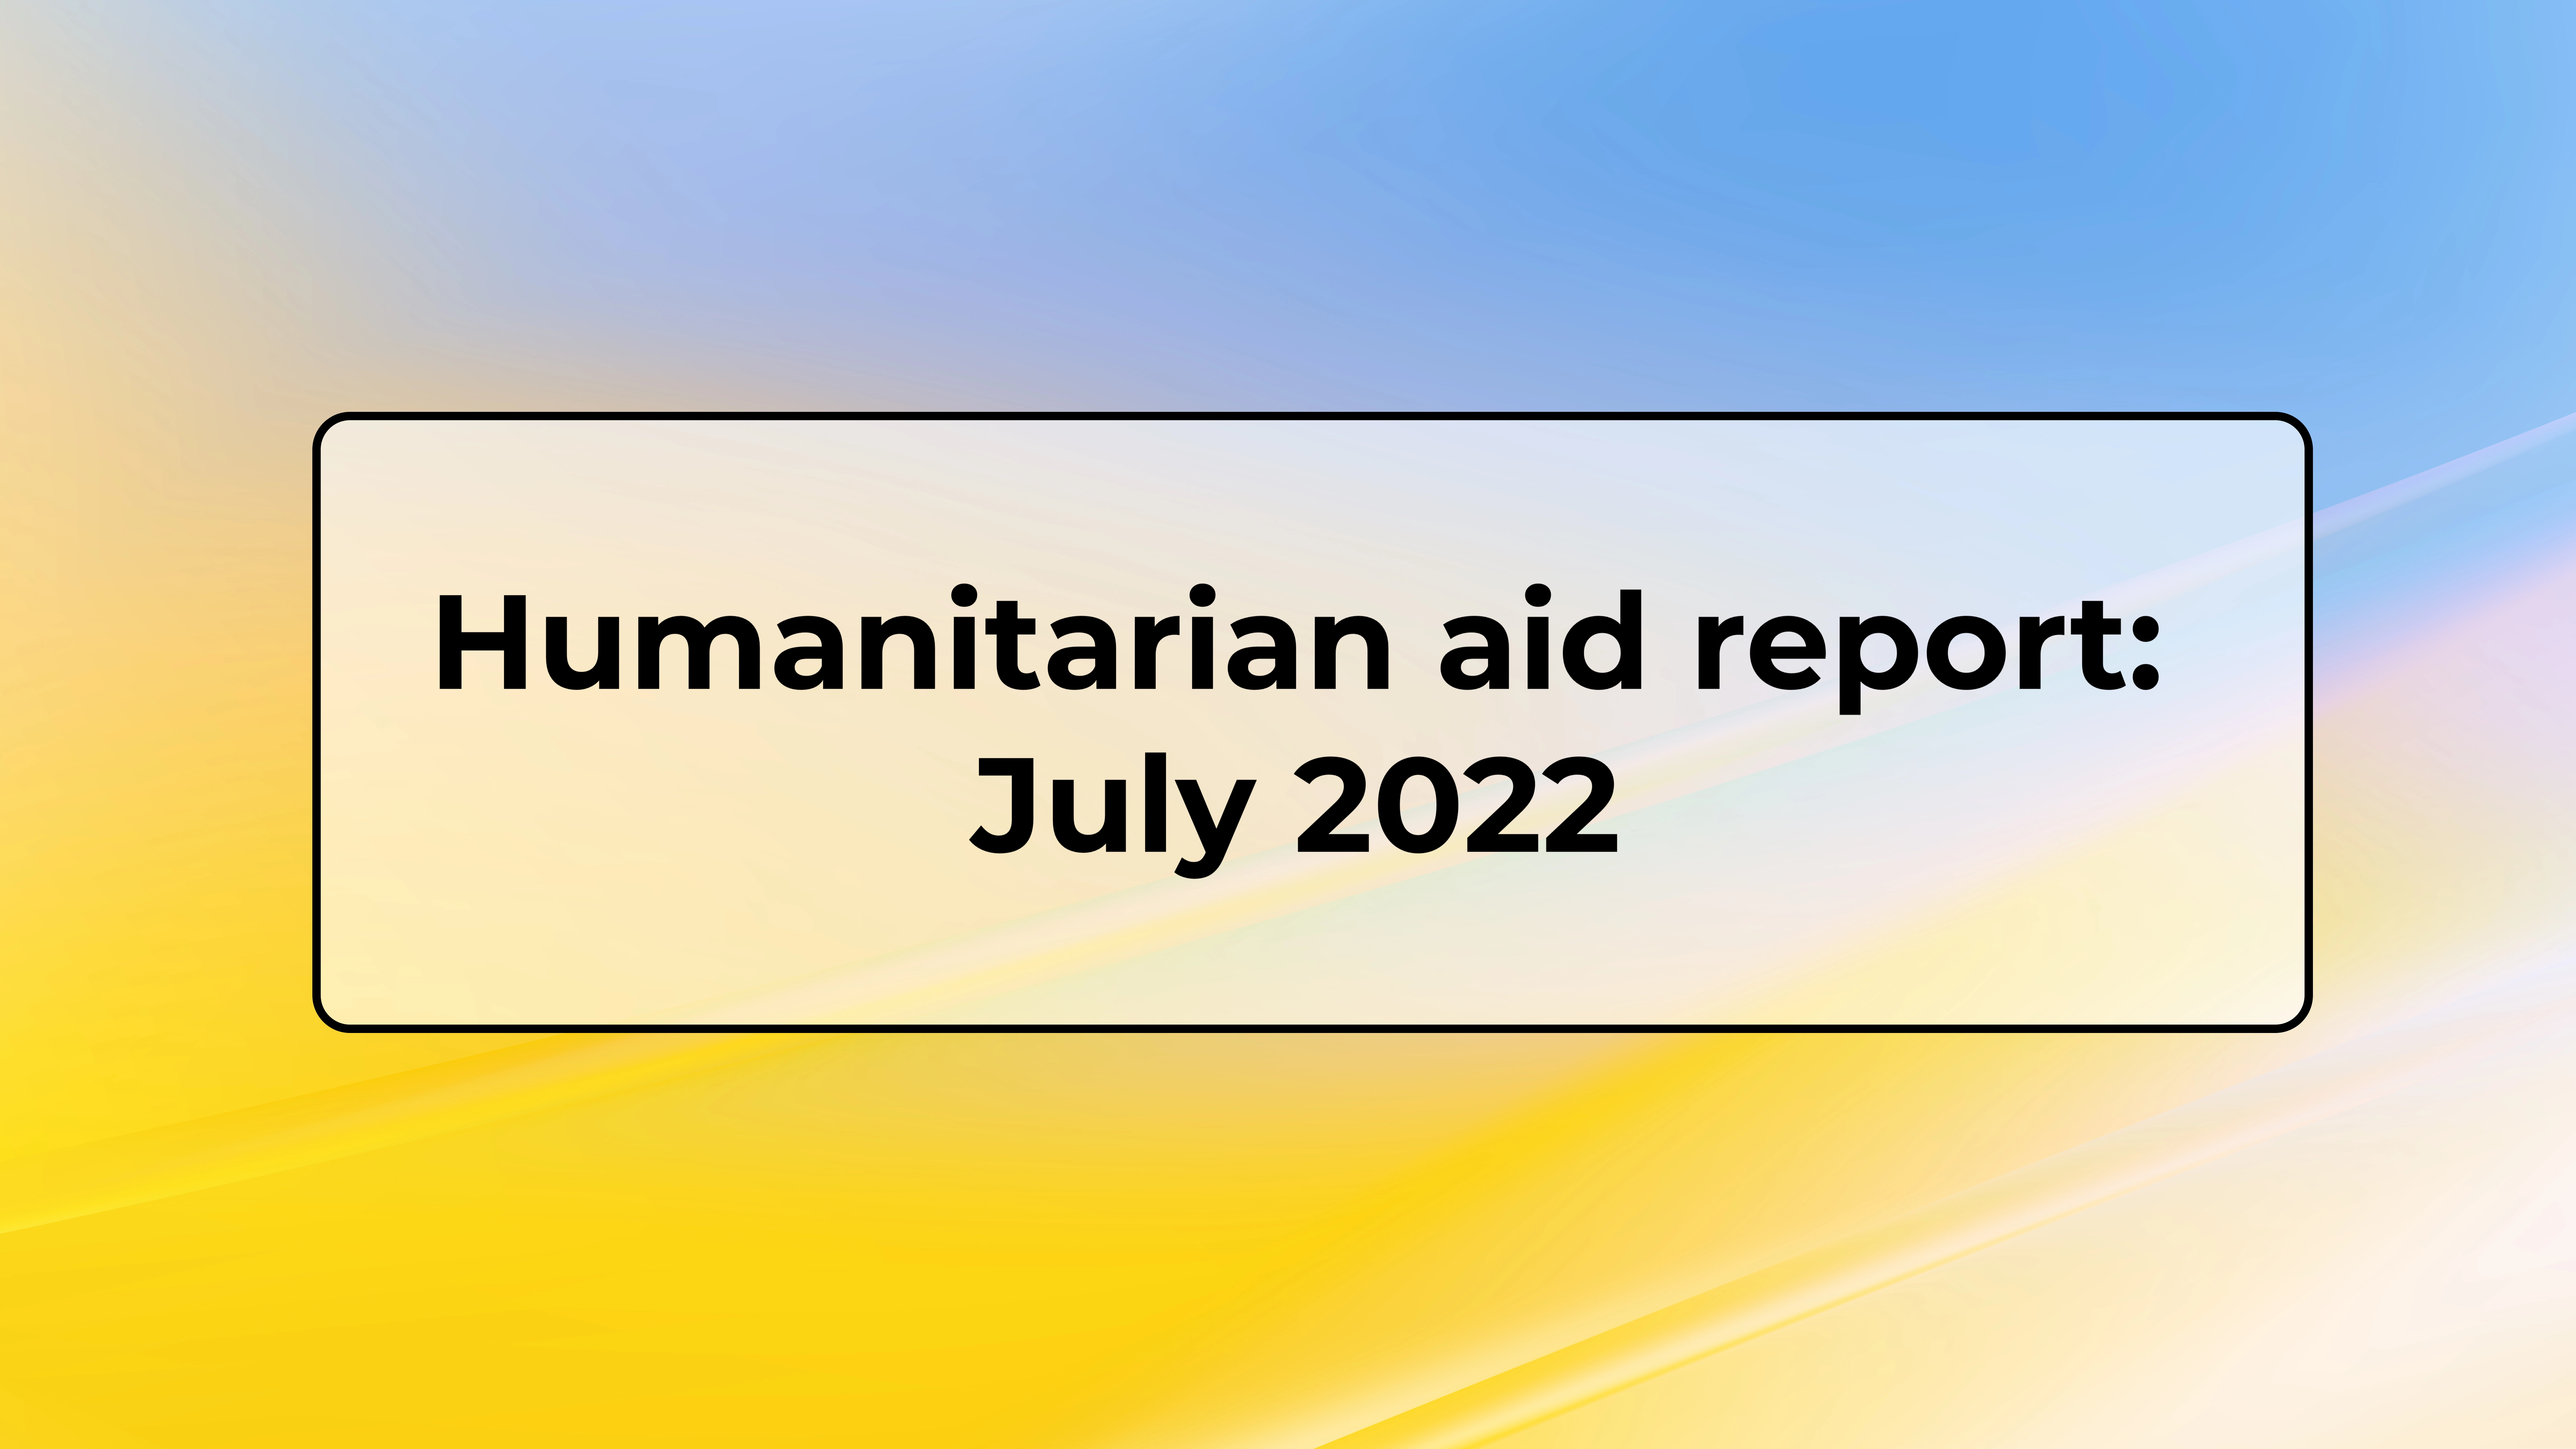 Humanitarian aid report June